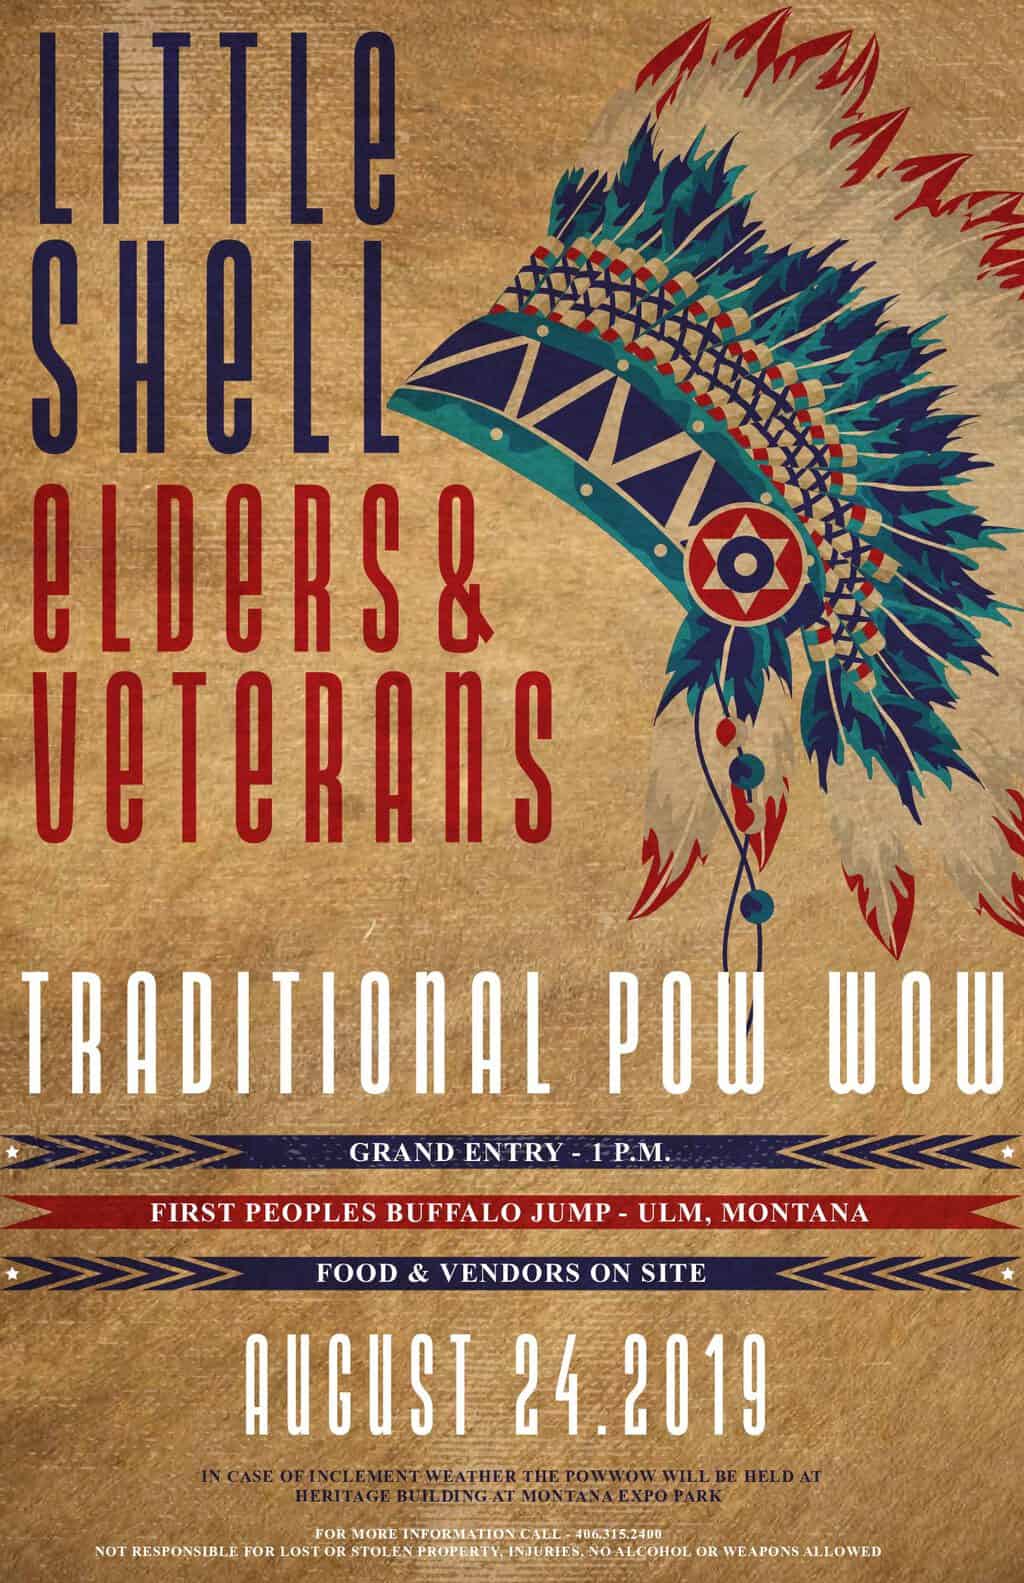 Little Shell Elders & Veterans Traditional Pow Wow (2019) Pow Wow